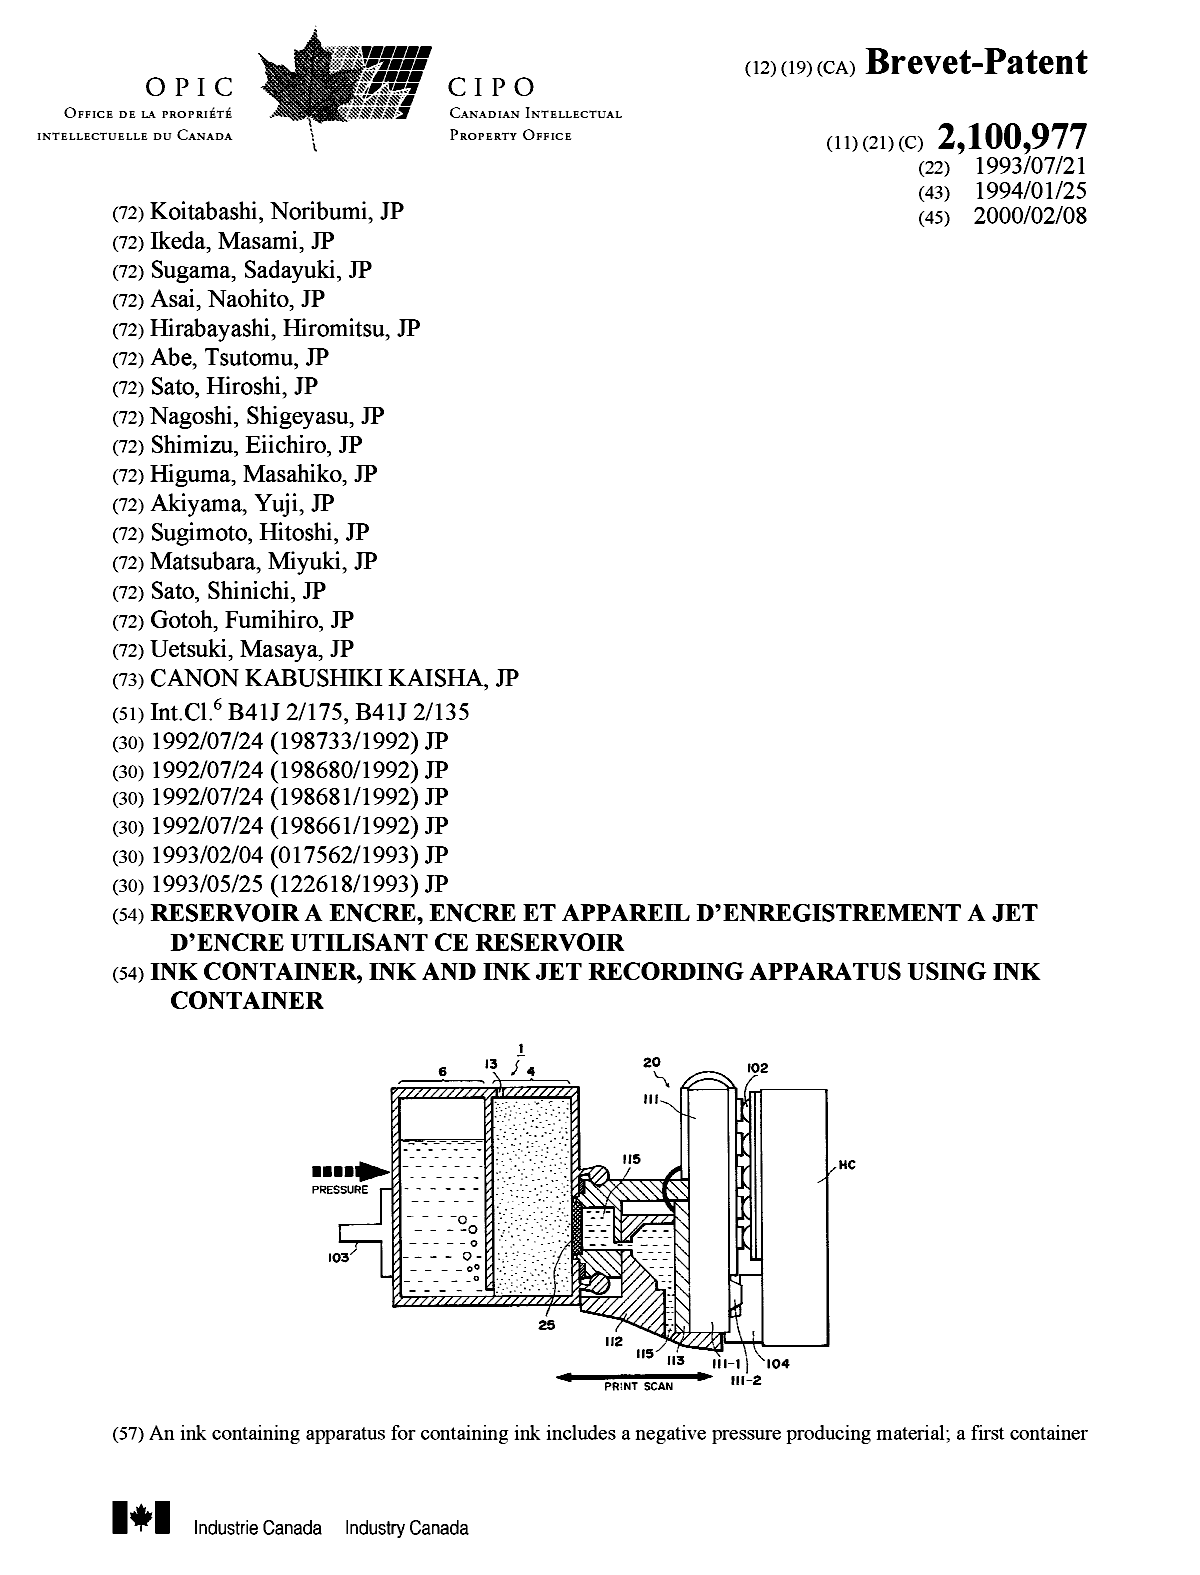 Document de brevet canadien 2100977. Page couverture 20000120. Image 1 de 2